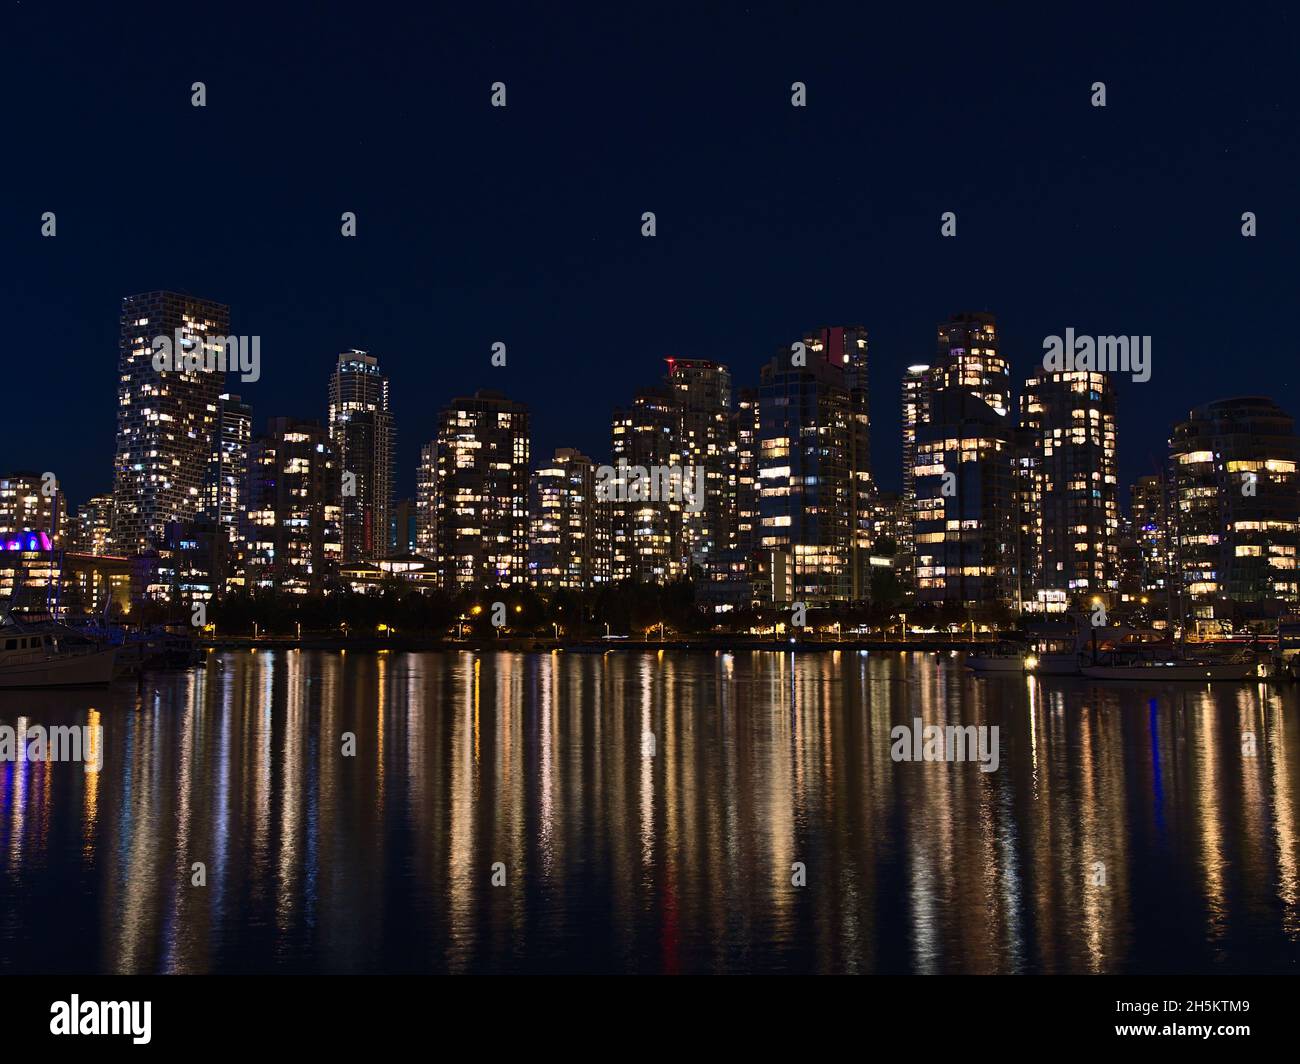 Nachtansicht der Skyline von Vancouver, British Columbia, Kanada in der Innenstadt mit Lichtern von beleuchteten Hochhäusern, die sich im glatten Wasser spiegeln. Stockfoto